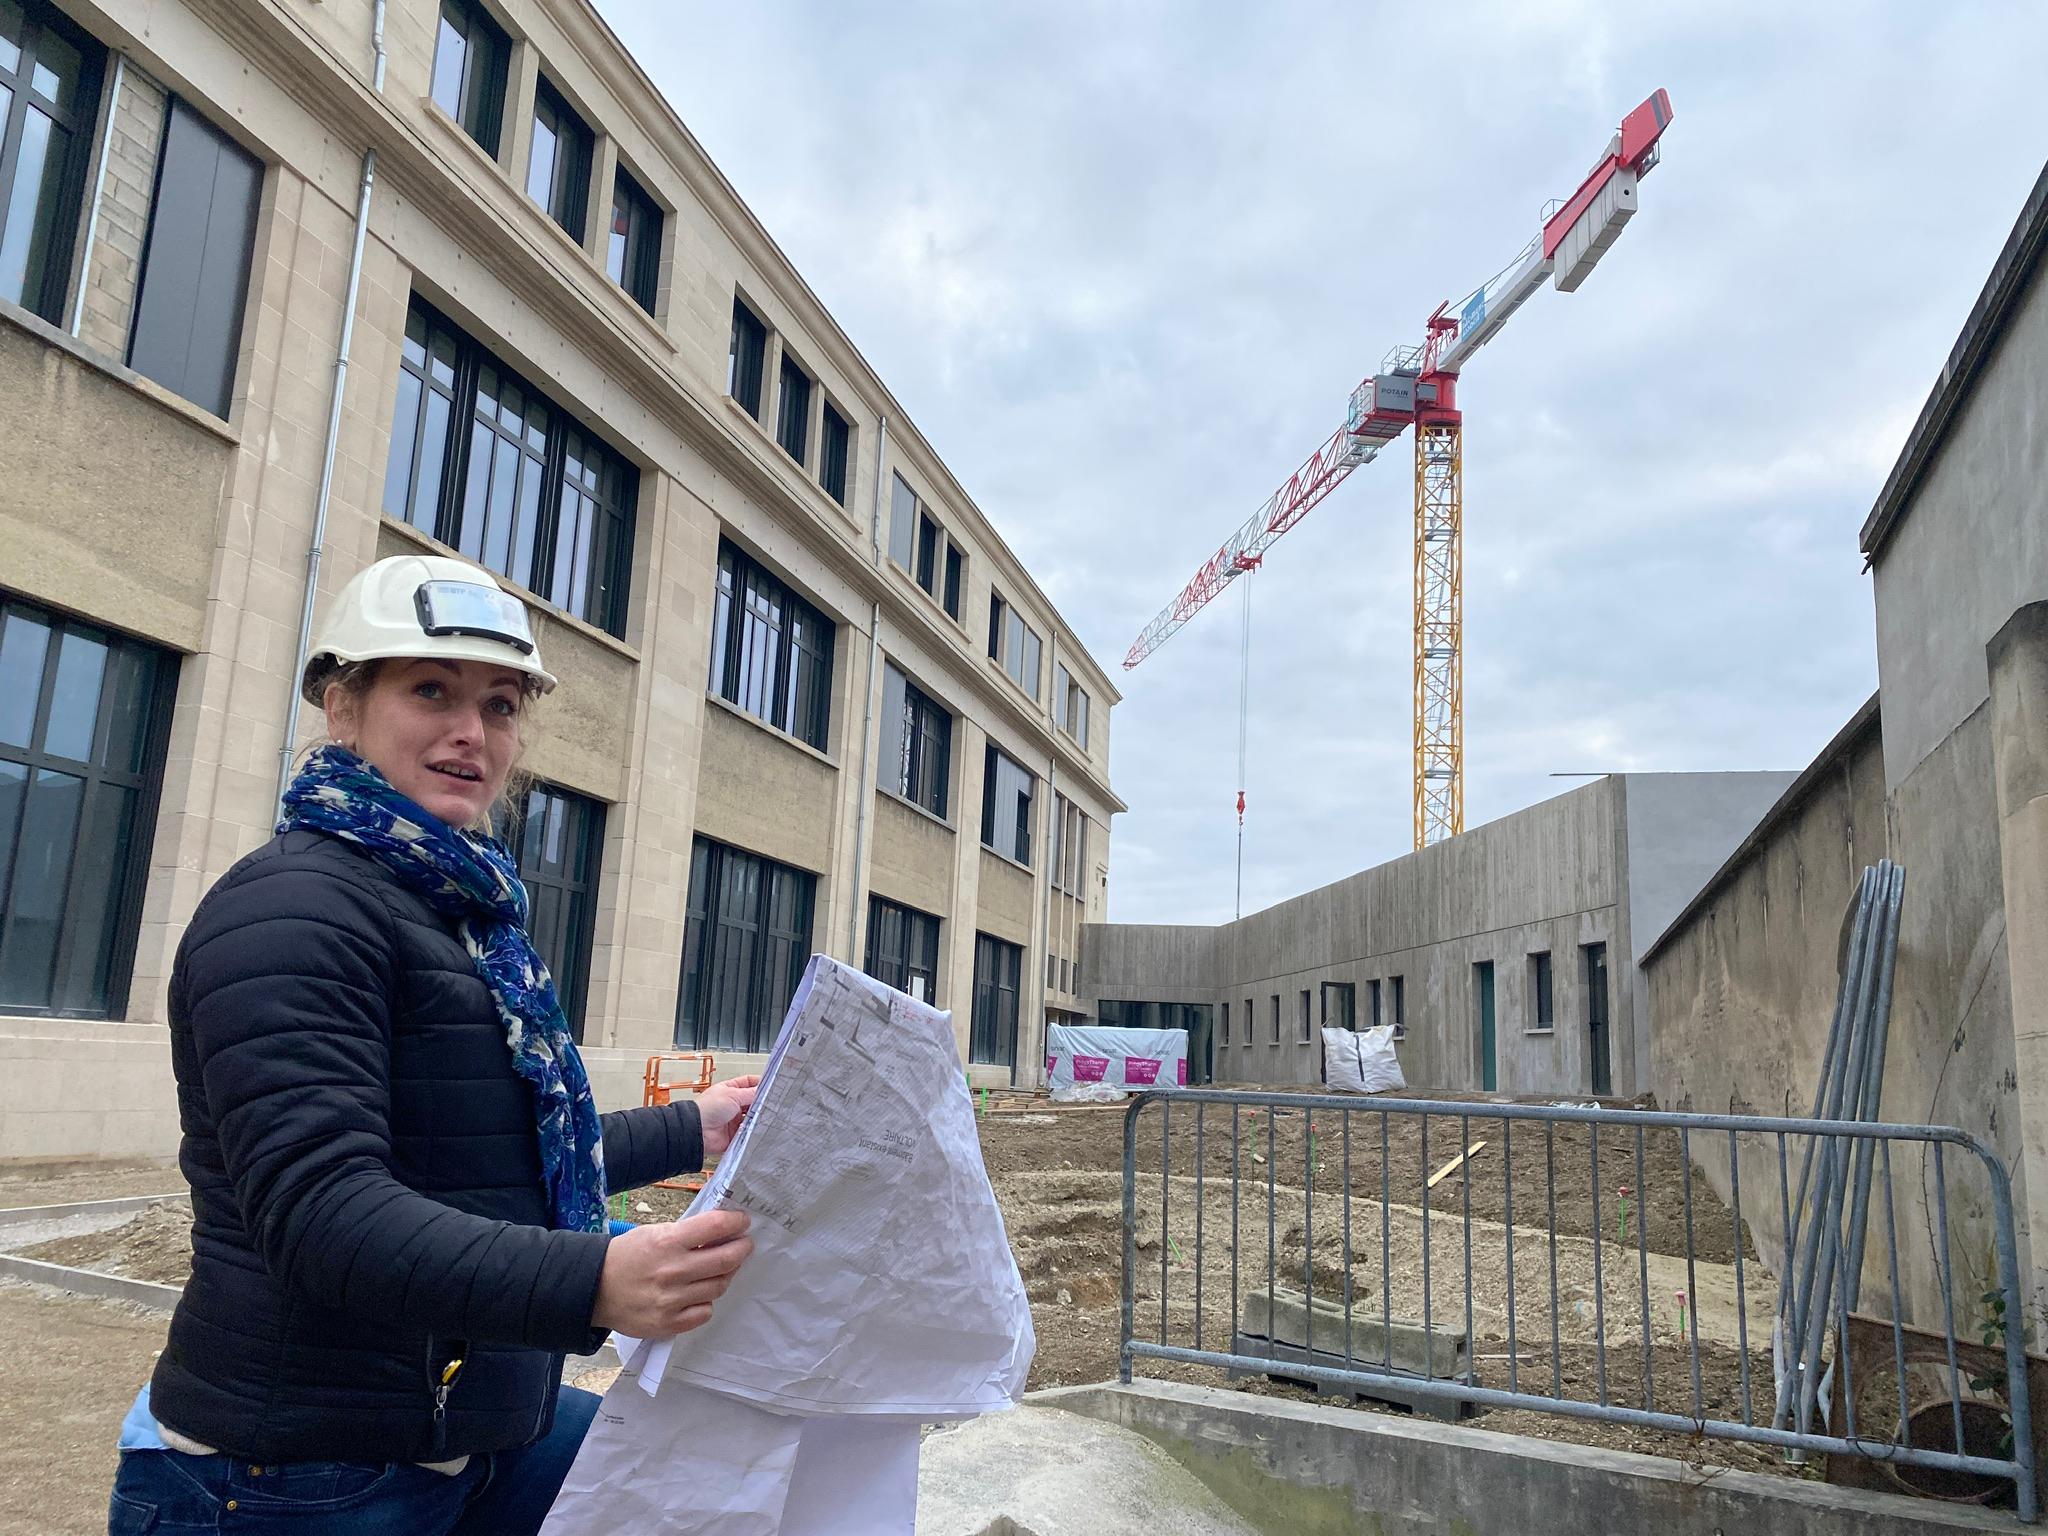 Passionnée des métiers du bâtiment depuis l'enfance, Camille Brosse, 31 ans, s’épanouit pleinement dans son rôle de conductrice de chantier à Muizon (Marne). Le Parisien